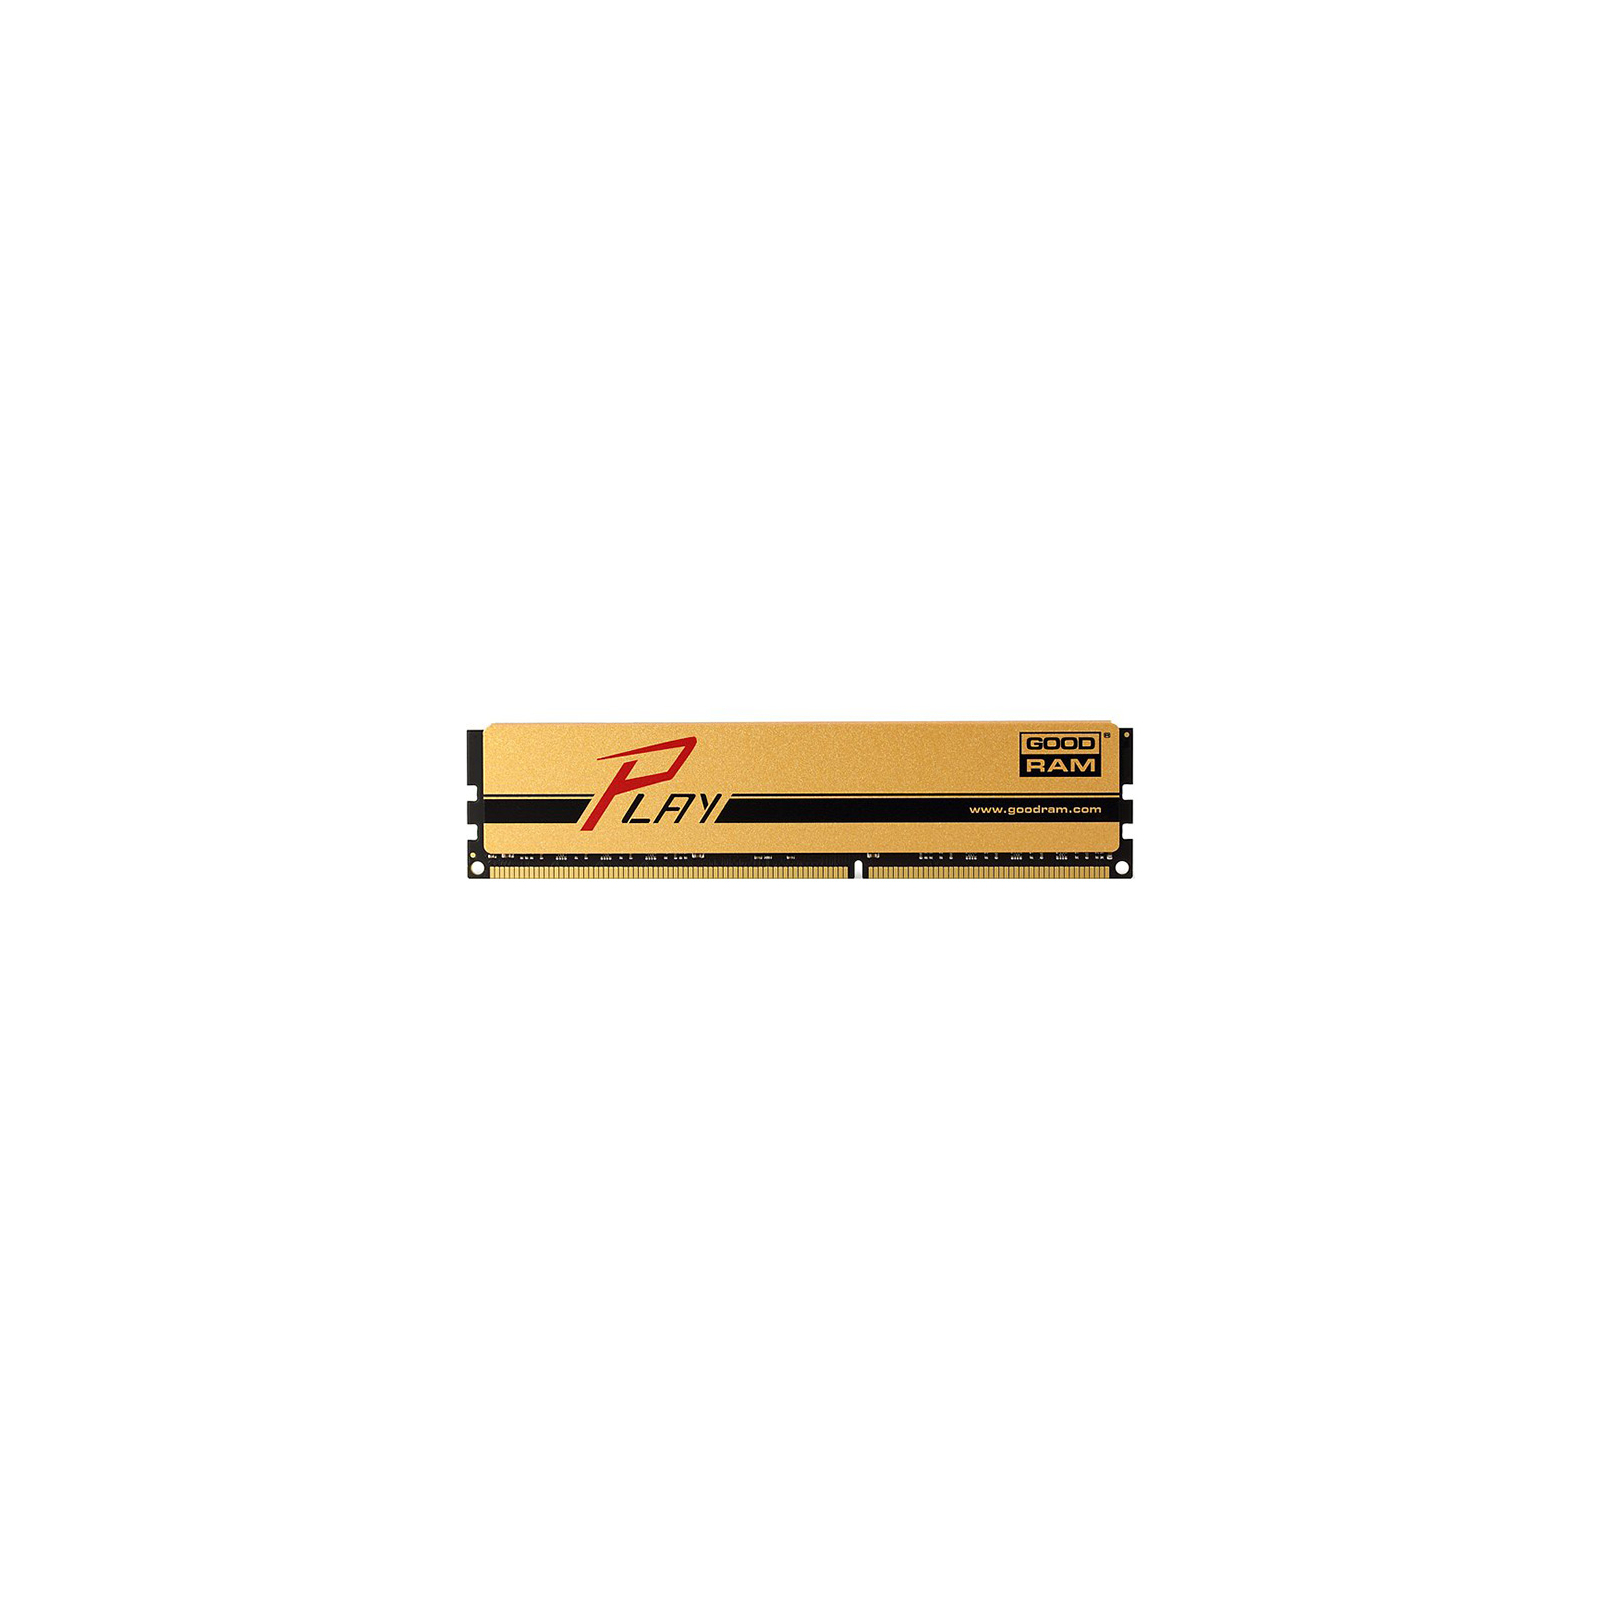 Модуль пам'яті для комп'ютера DDR3 4GB 1866 MHz PLAY Gold Goodram (GYG1866D364L9AS/4G)